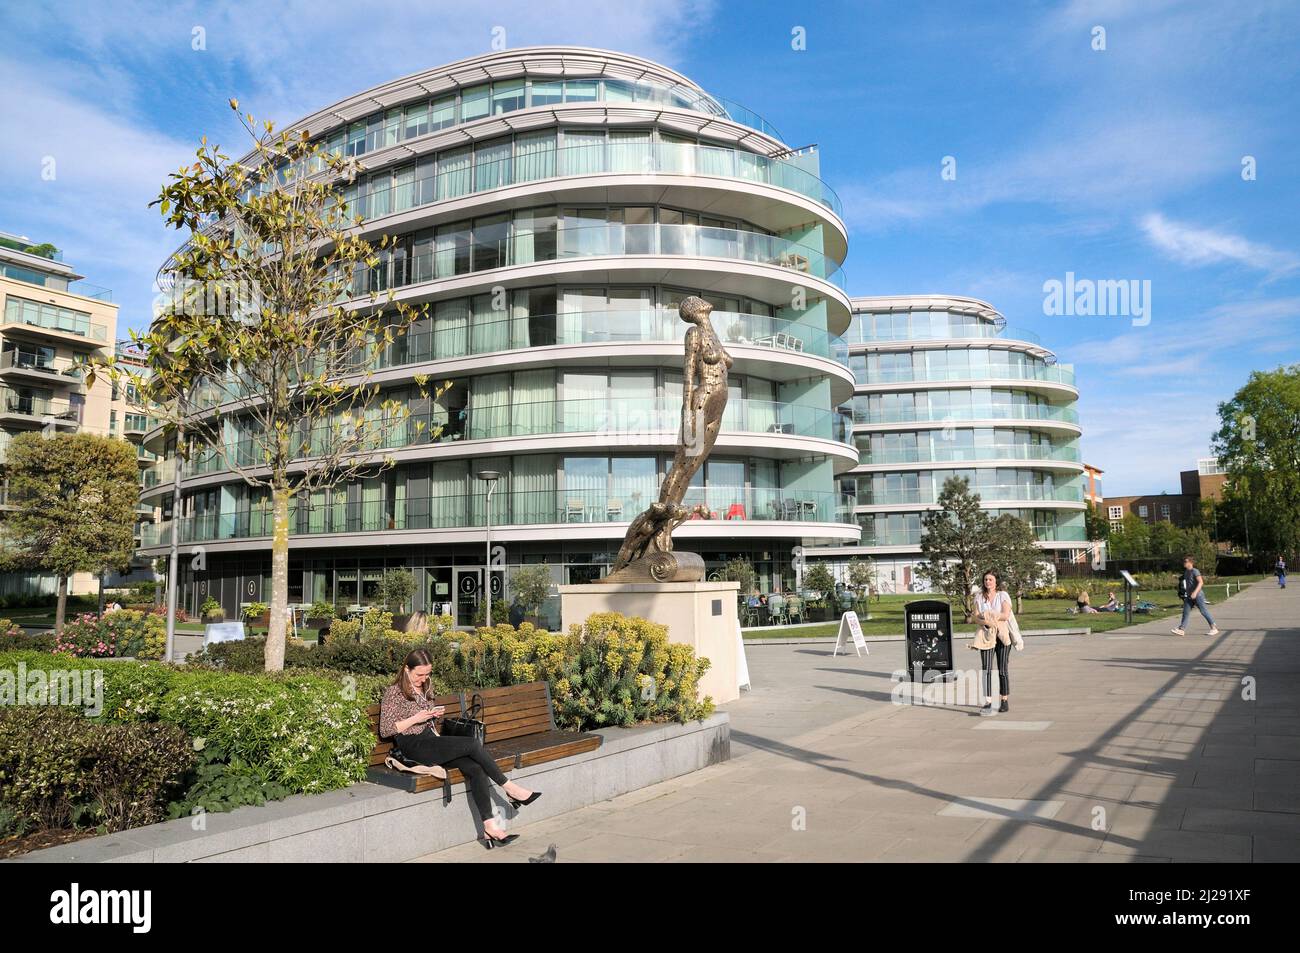 Appartements modernes au bord de la rivière et sculpture à têtes de figuiers par Rick Kirby, Distillery Wharf, Fulham Reach, Hammersmith et Fulham, West London, Angleterre, Royaume-Uni Banque D'Images